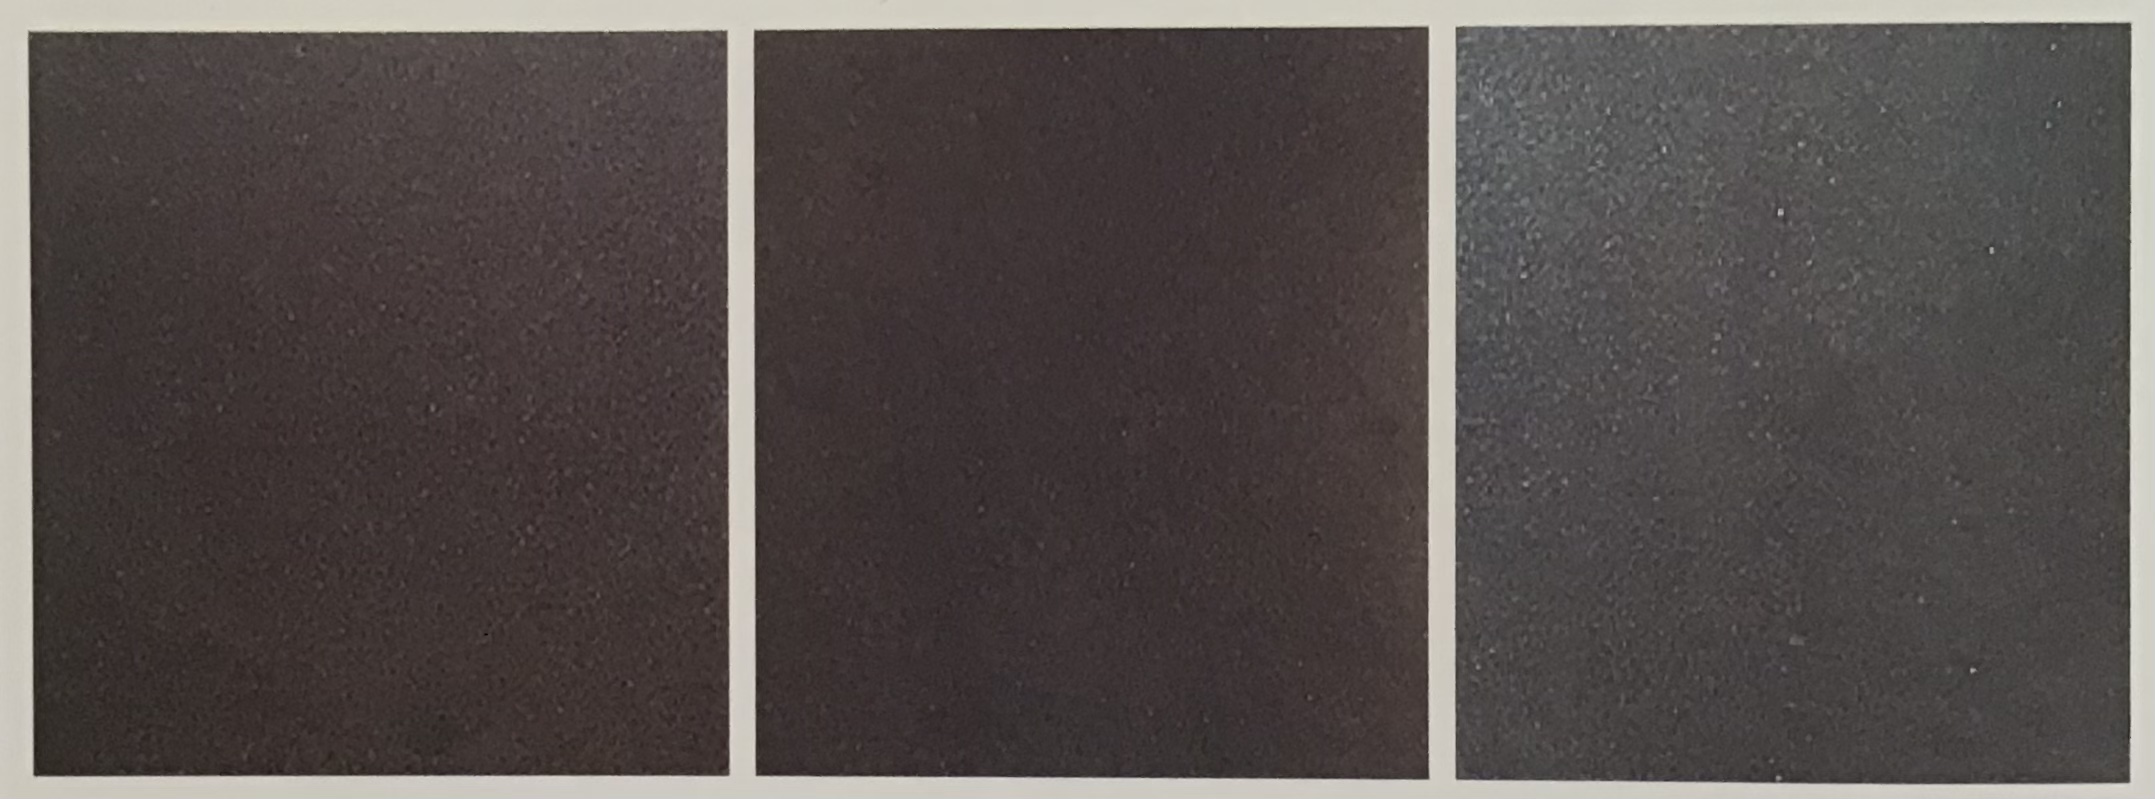 Hình 4-50: Thay đổi màu sắc của quặng Hắc đôn đầu khi nung theo nhiệt độ